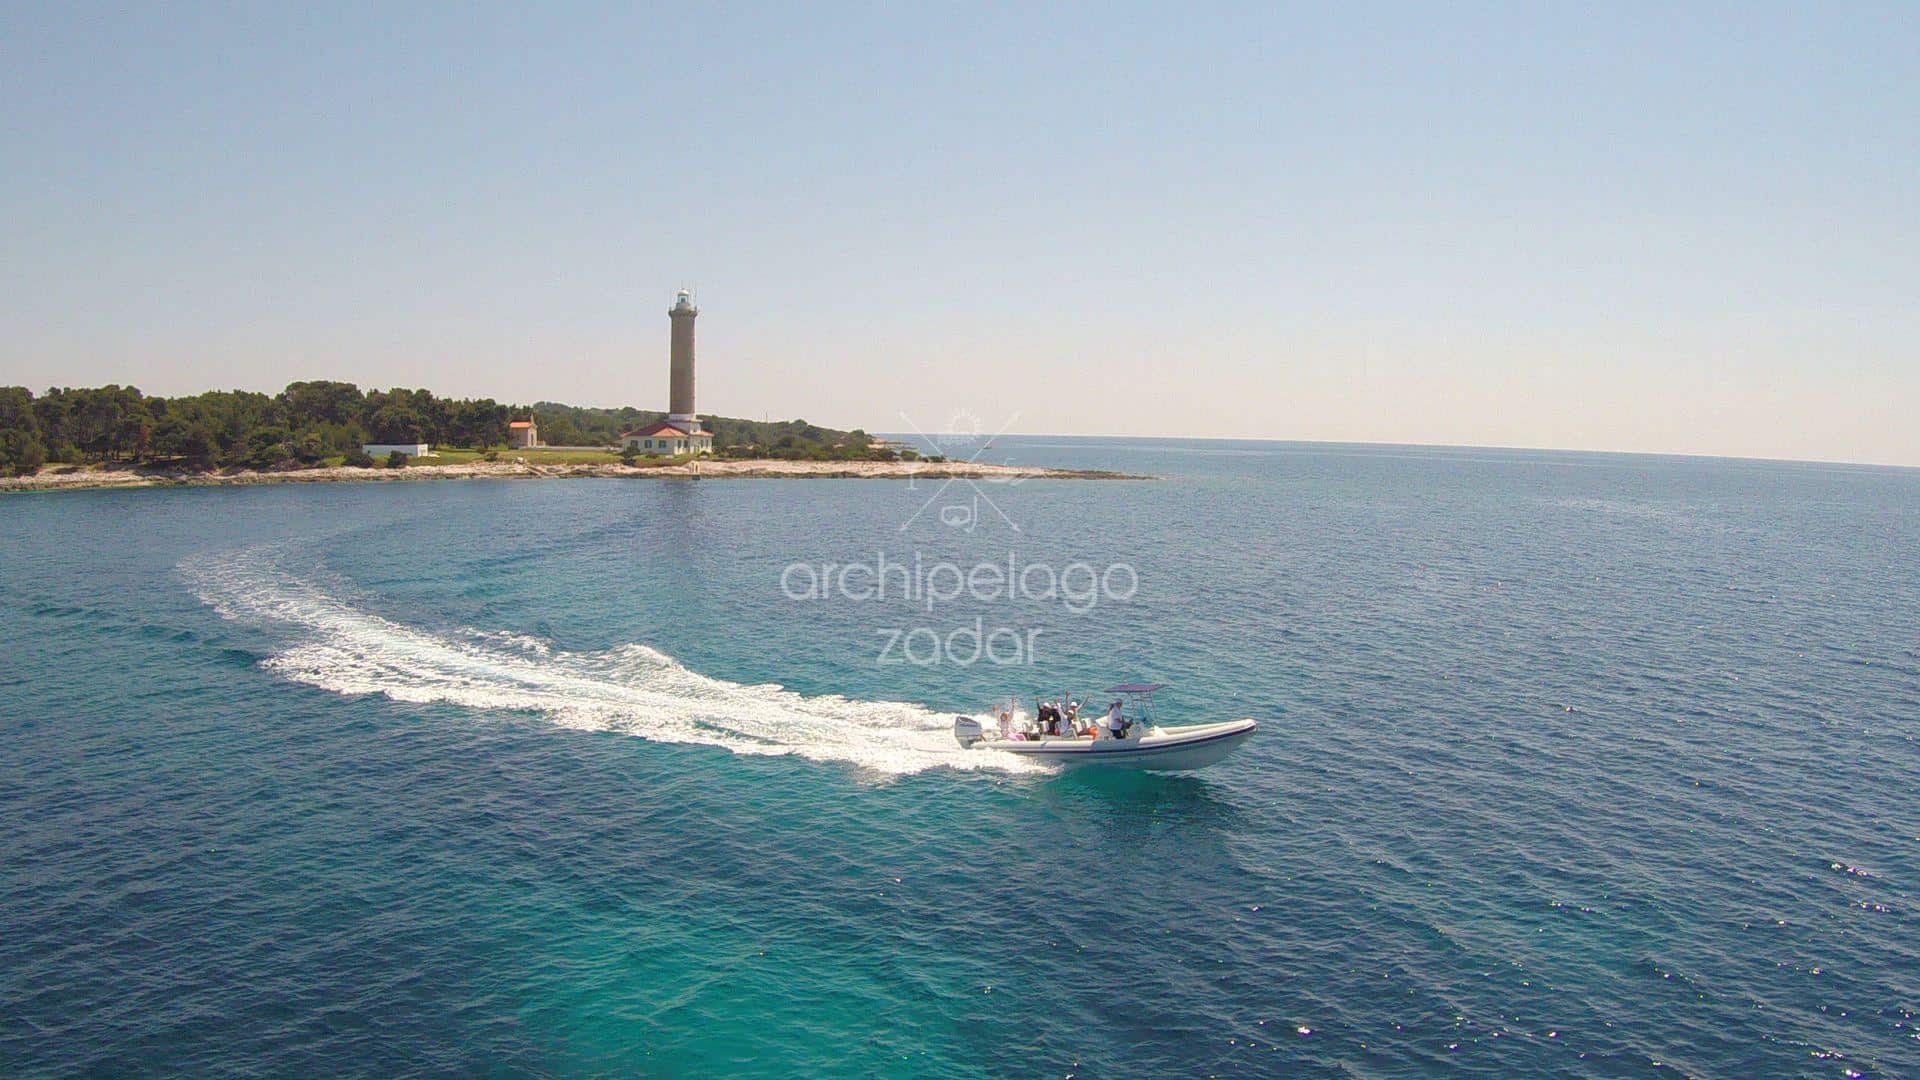 boat tour near a lighthouse on dugi otok